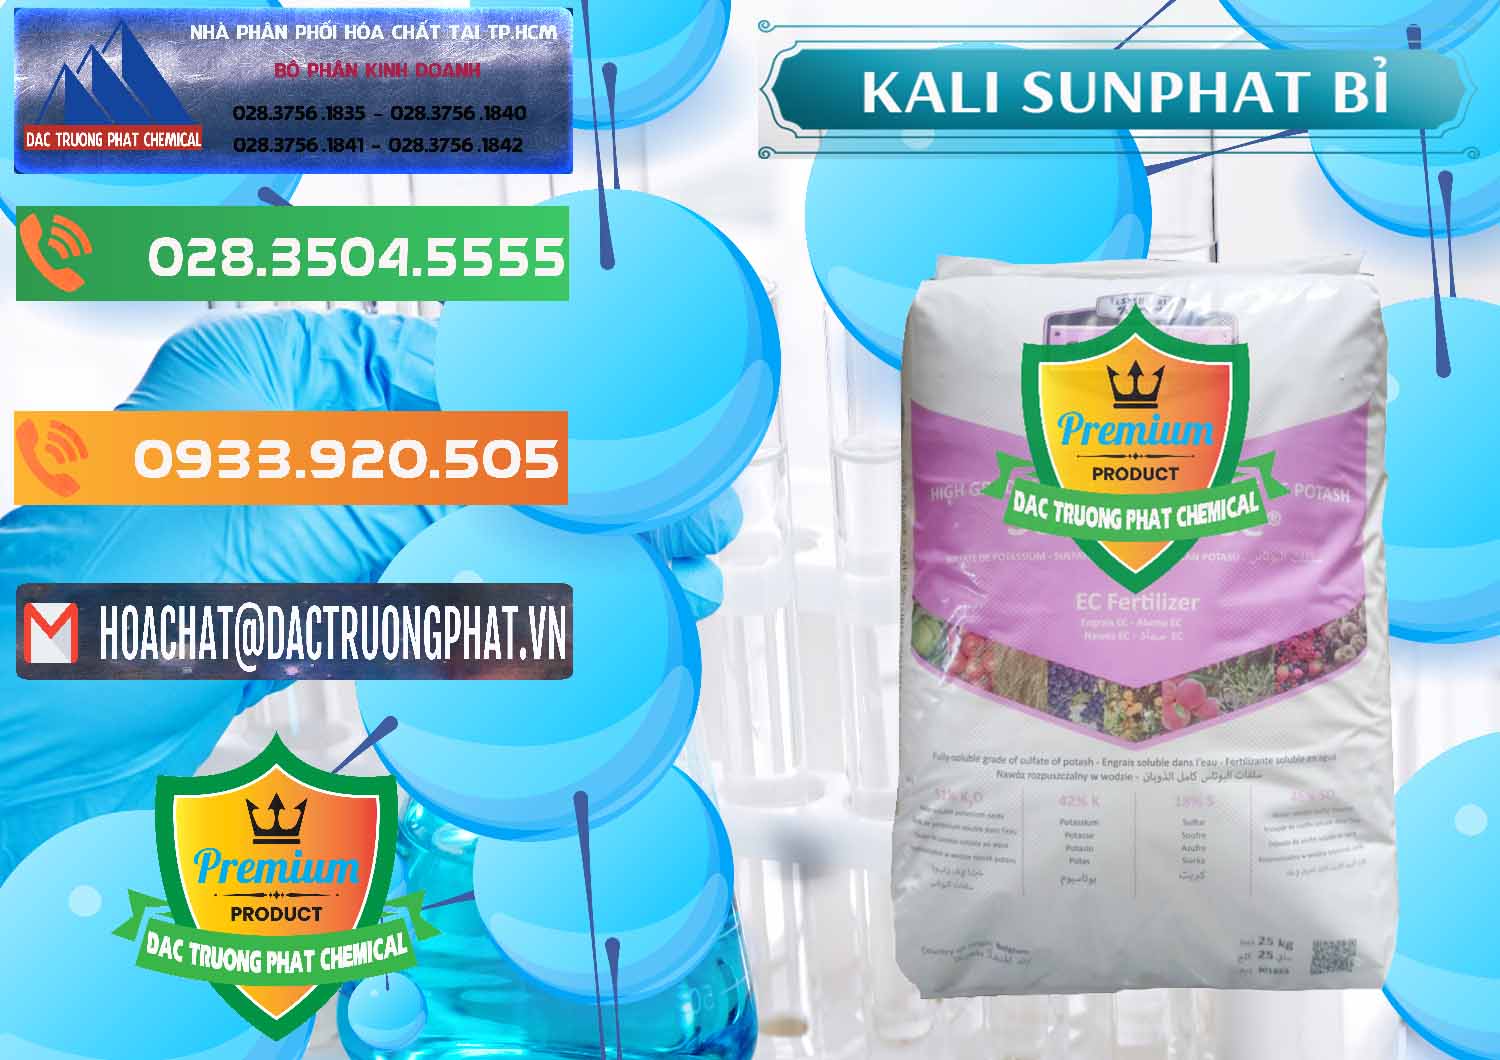 Nơi chuyên phân phối và bán Kali Sunphat – K2SO4 Bỉ Belgium - 0406 - Cty chuyên cung cấp - nhập khẩu hóa chất tại TP.HCM - hoachatxulynuoc.com.vn